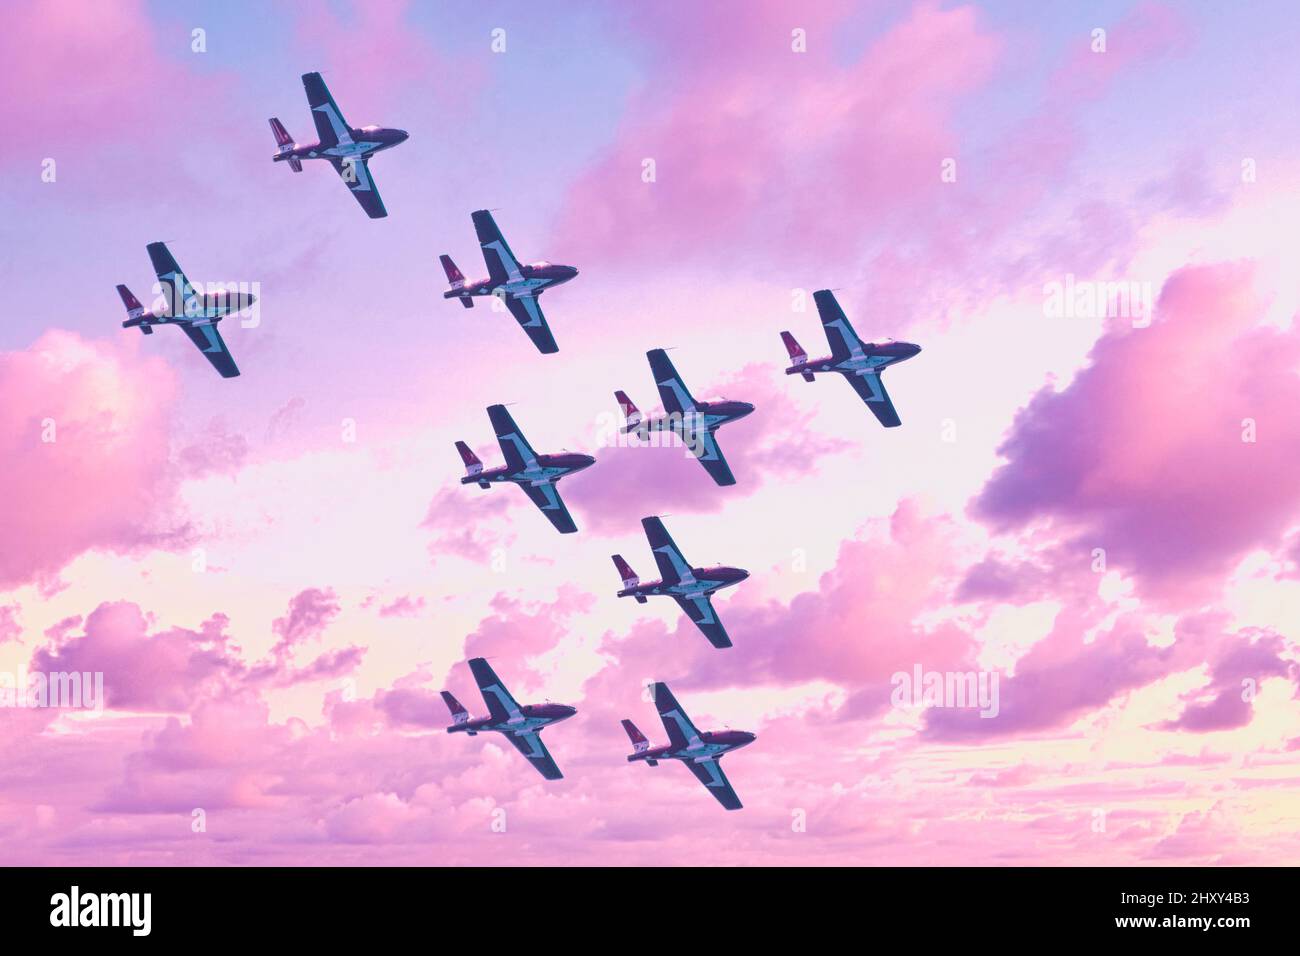 Snowbirds des Forces canadiennes pendant le salon de l'aviation international de Toronto, 2021 Banque D'Images